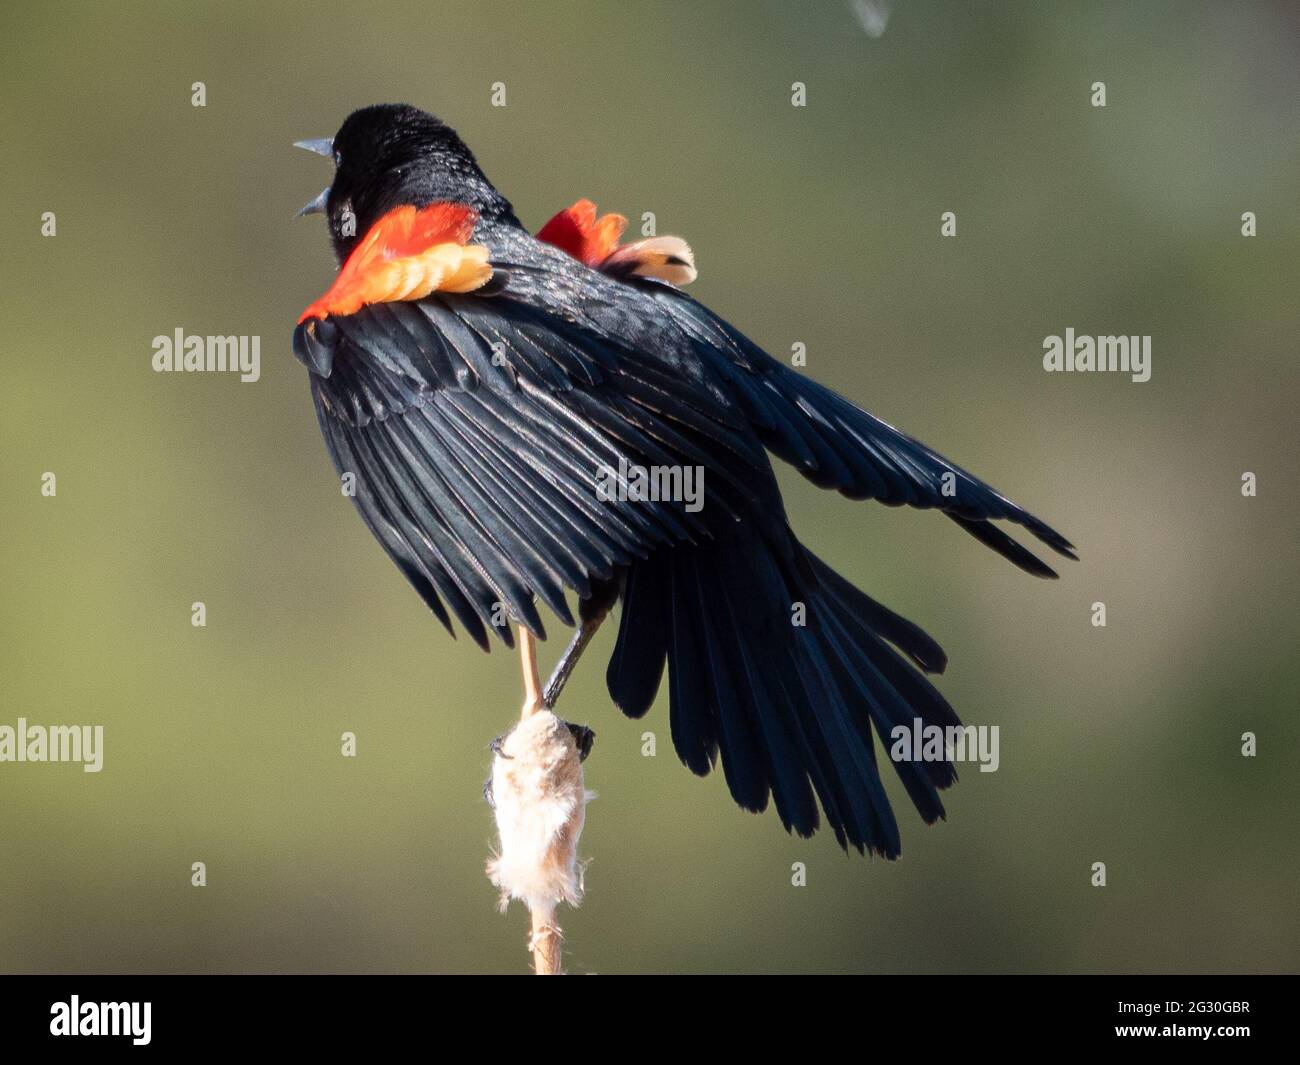 Un uccello nero maschio alato rosso si aggraffa ad un ramo mentre canta per attirare l'attenzione delle femmine. Foto Stock